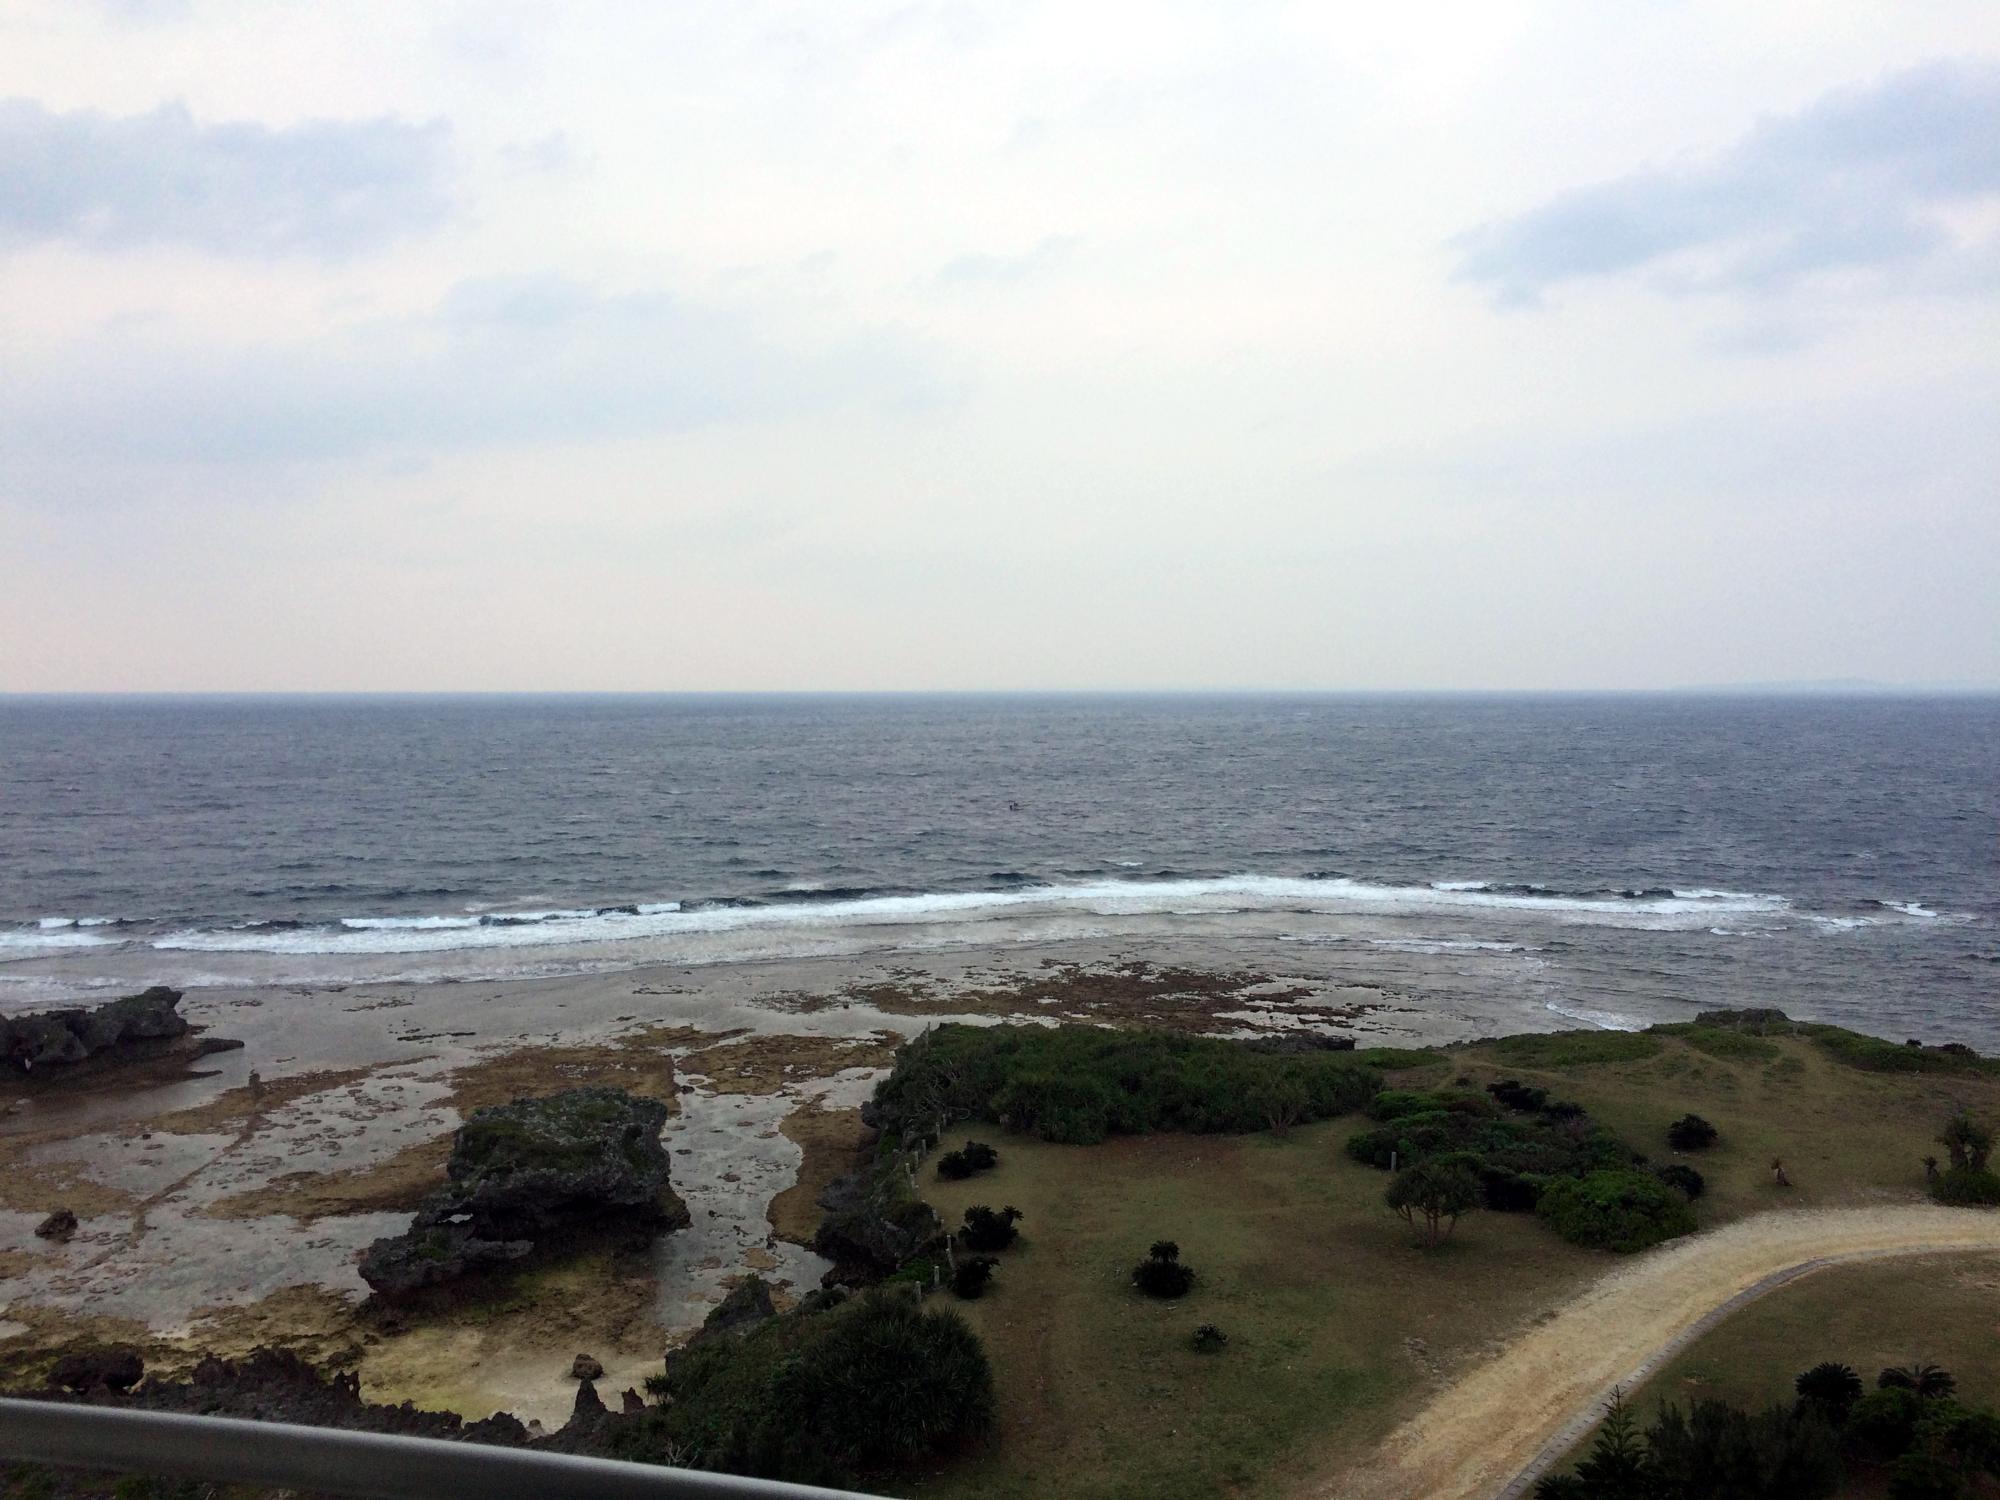 Okinawa - Low Tide #2